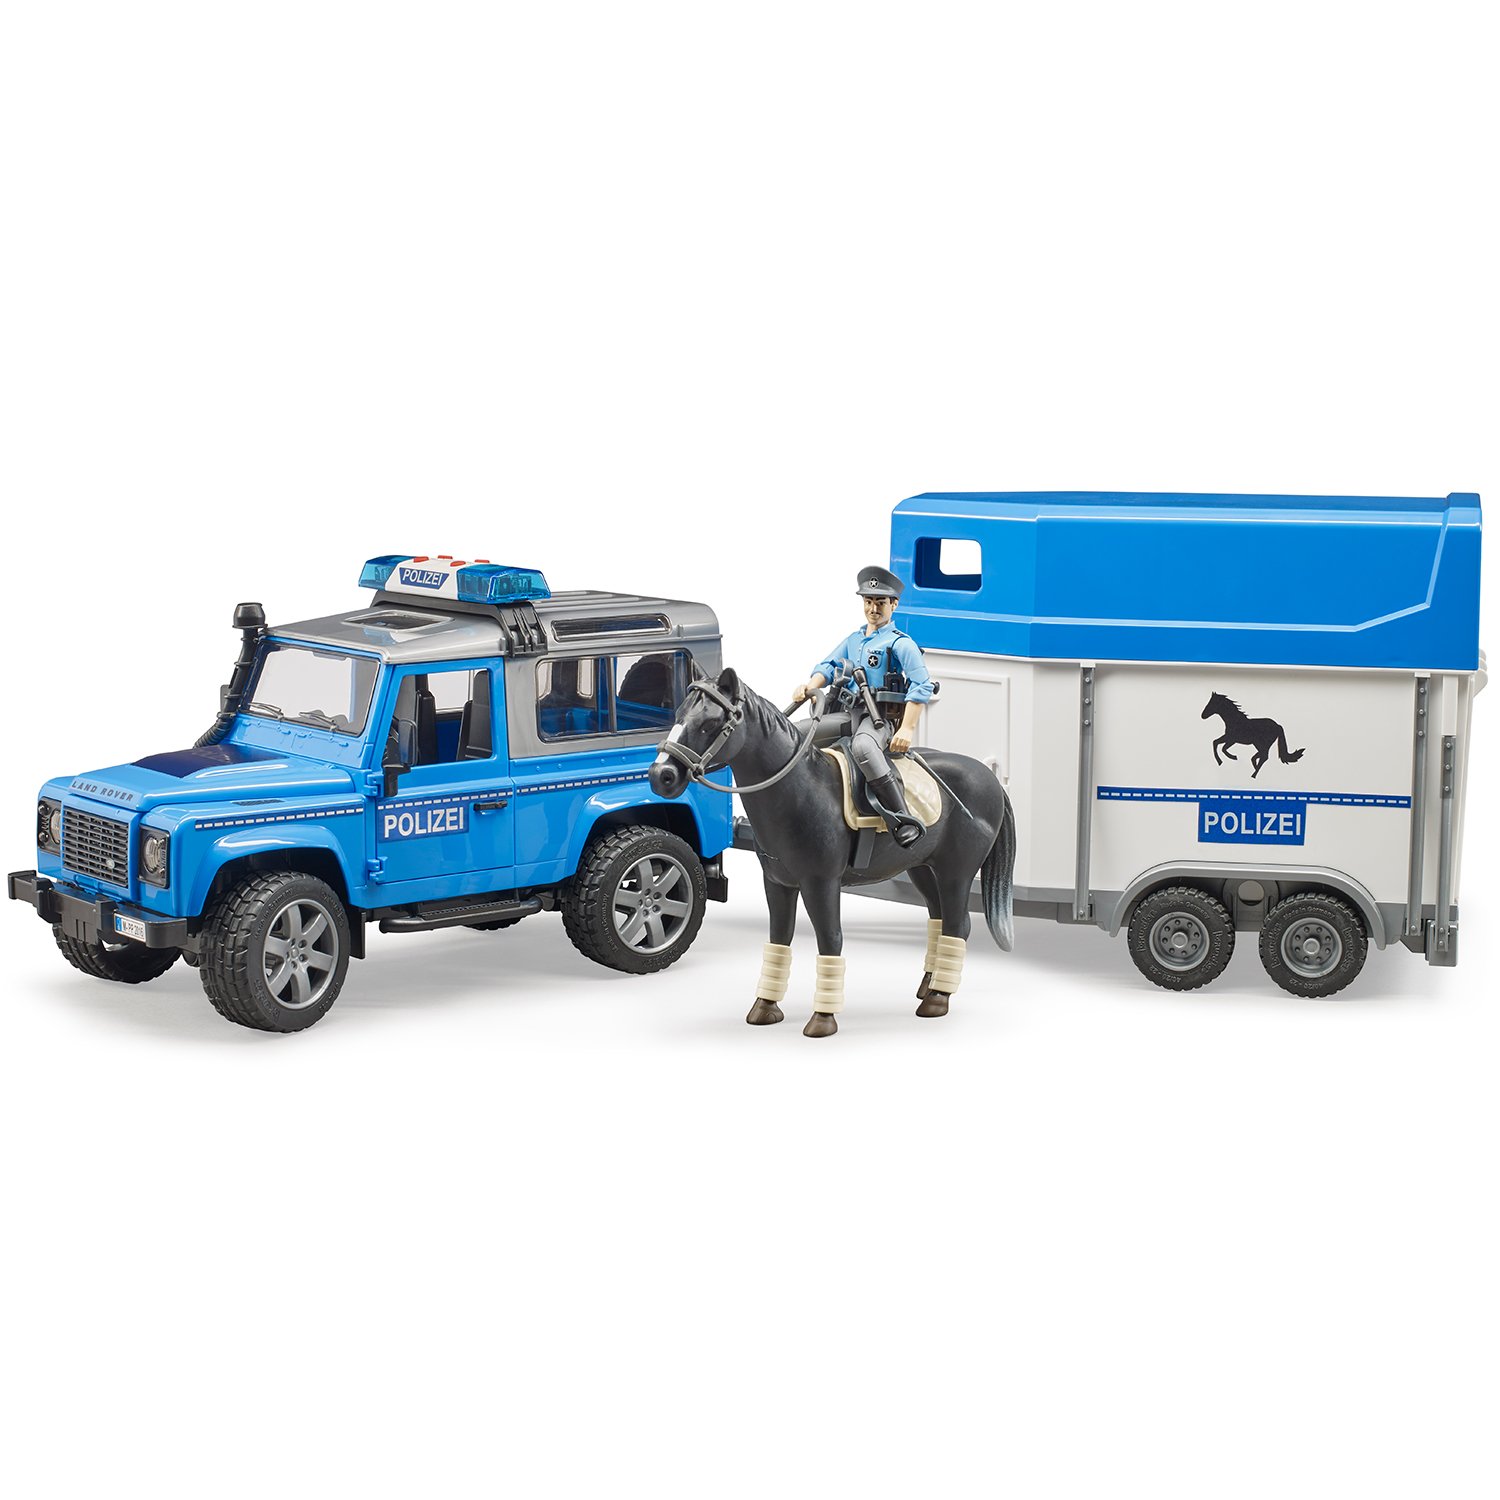 Внедорожник Land Rover Defender полицейский с прицепом, фигуркой и лошадью